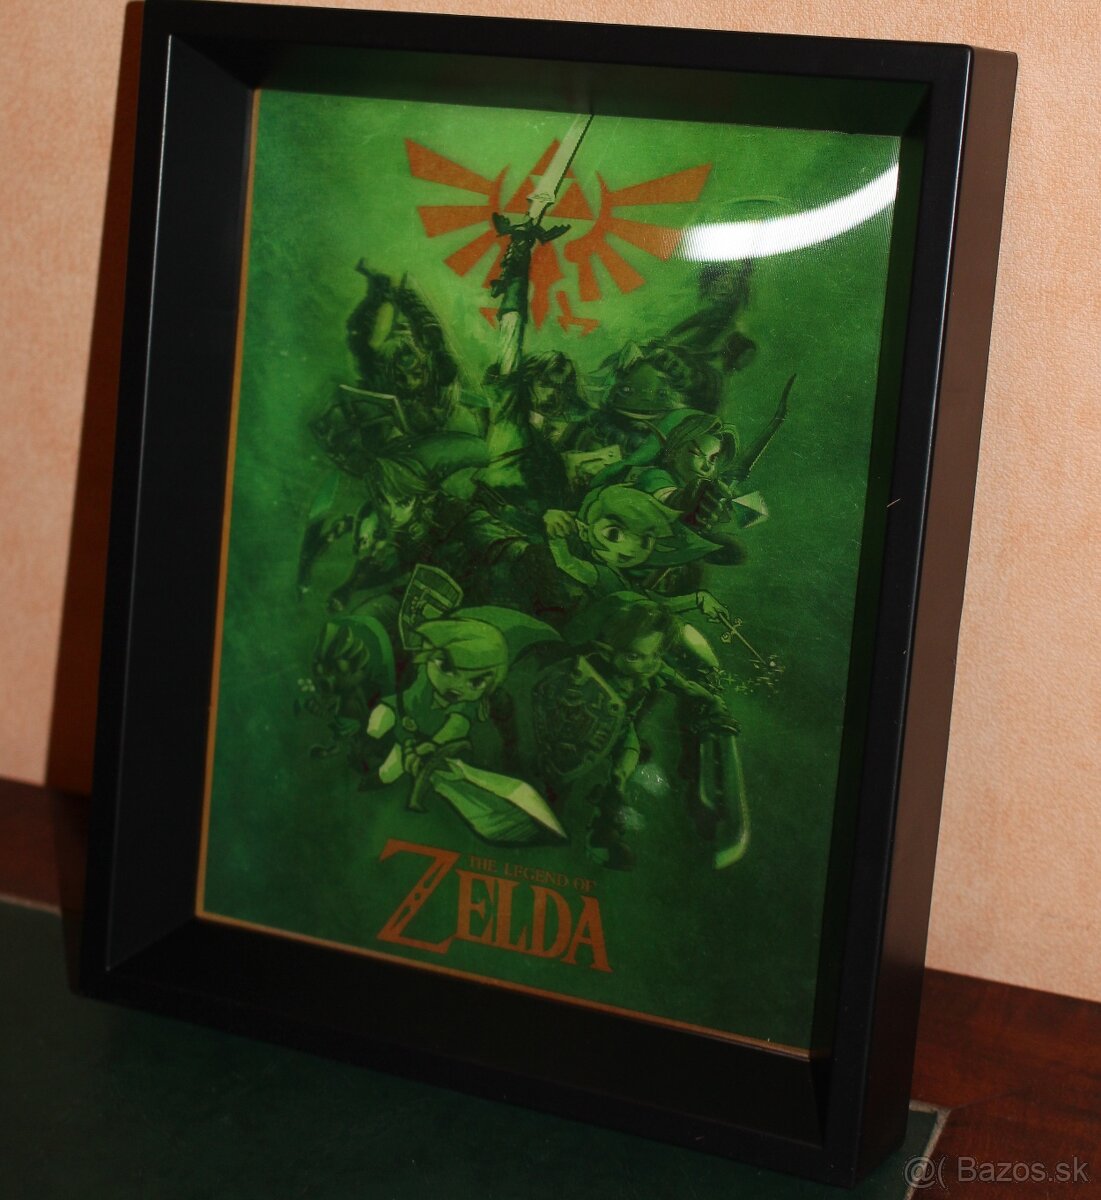 Legend of ZELDA 3D Lenticular Frame Nintendo / Limitovaná ed